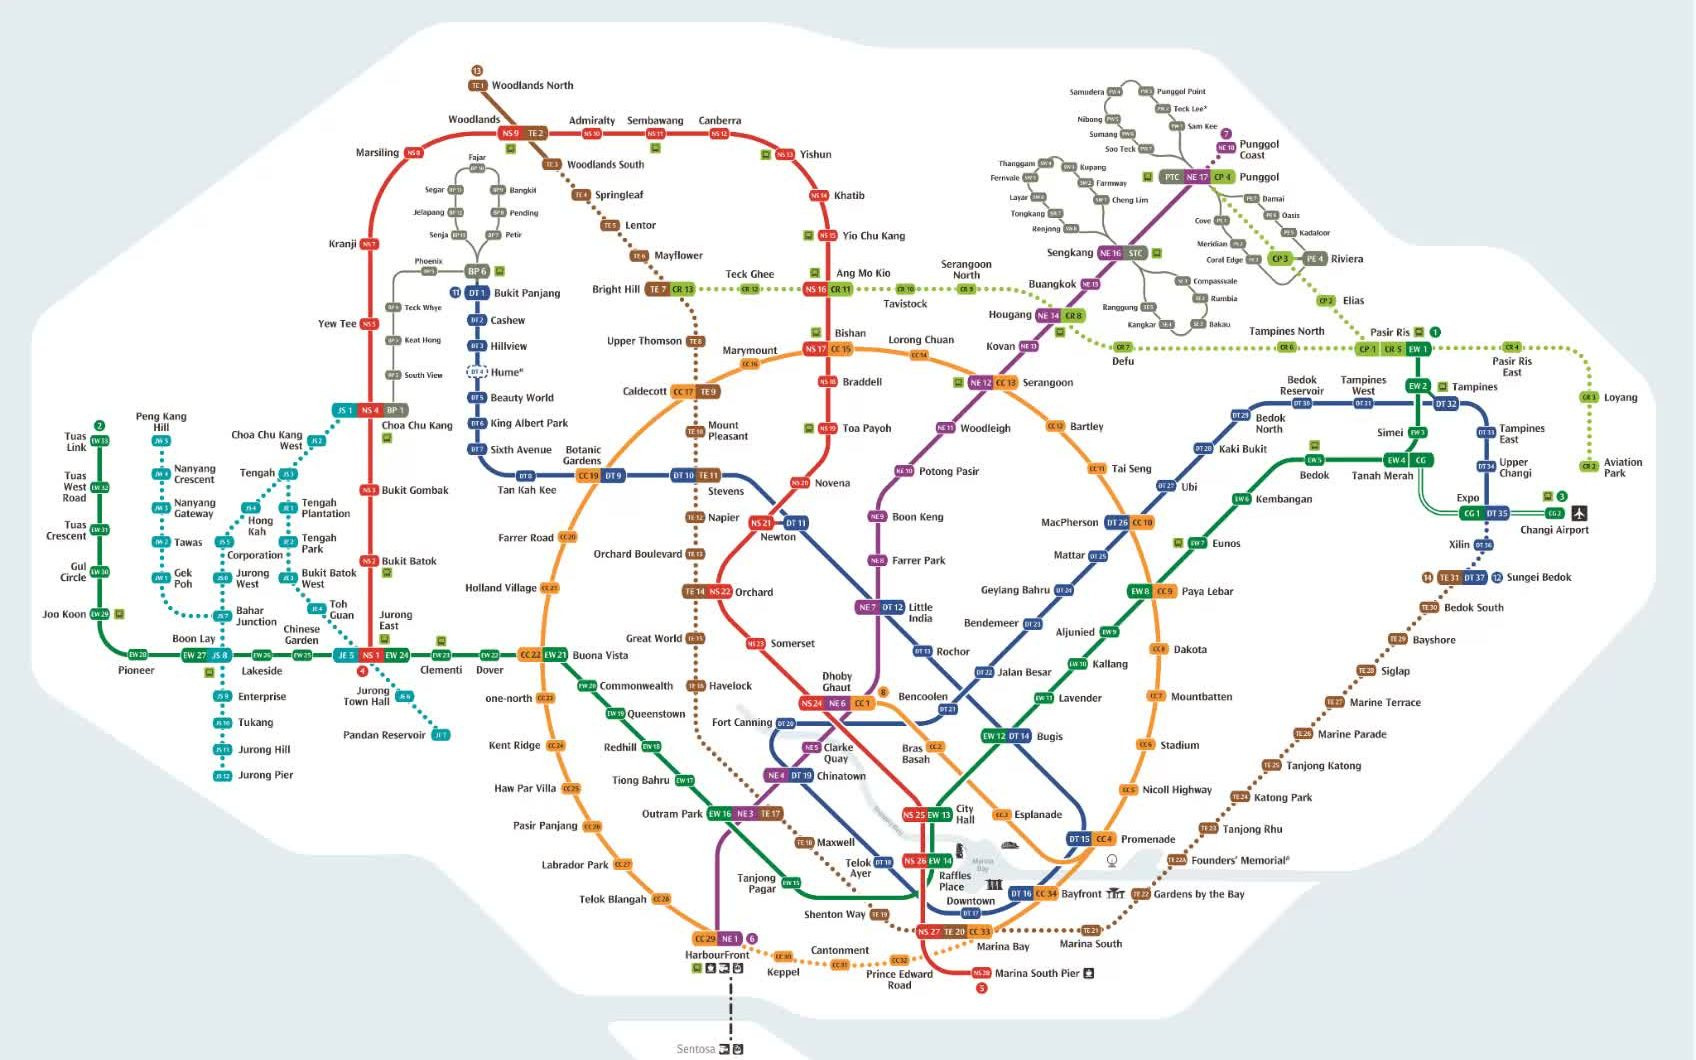 新加坡地铁图2021下载图片